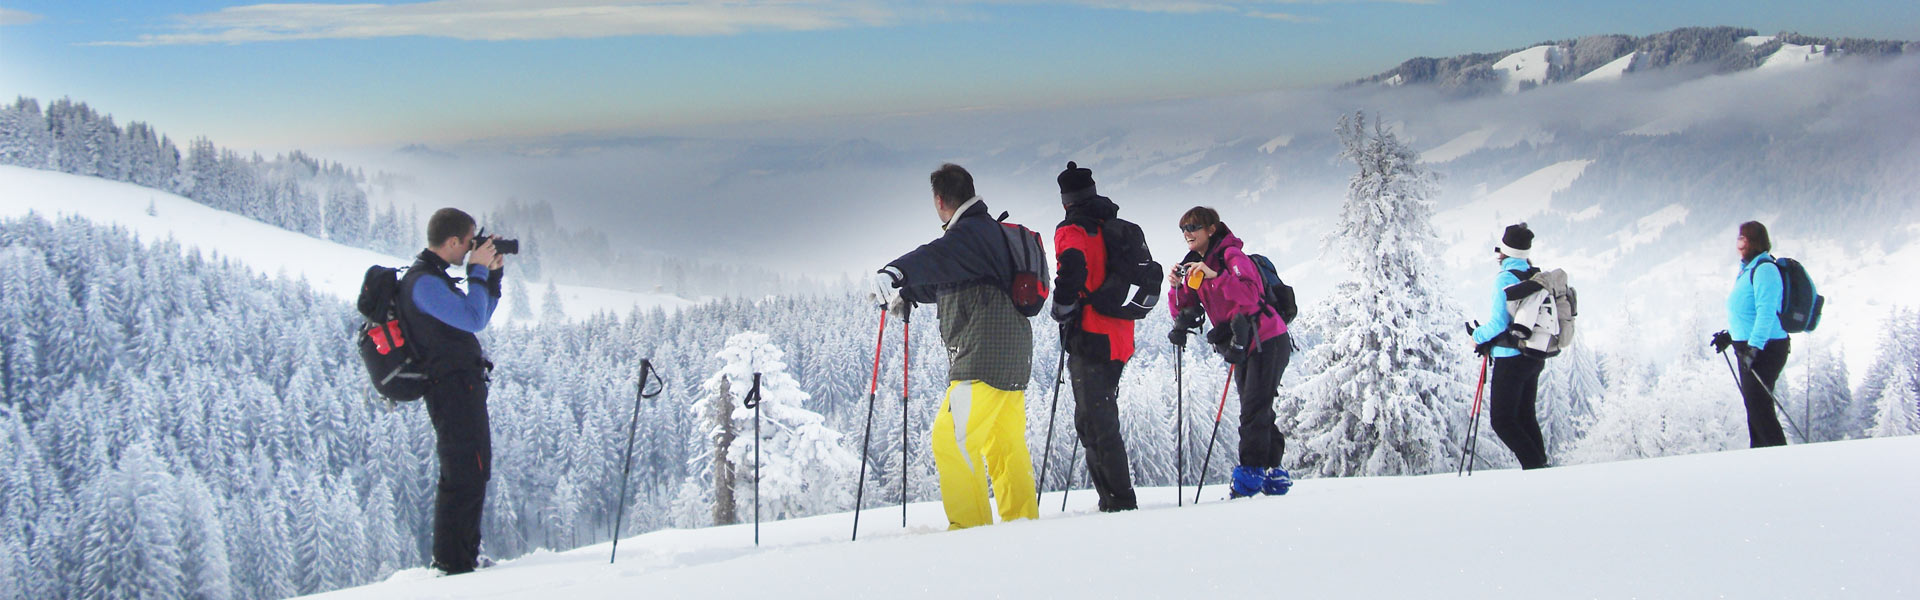 Schneeschuhwandern Allgäu eine Übersicht unserer schönen Schneeschuhtagestouren und Schneeschuhhalbtagestouren